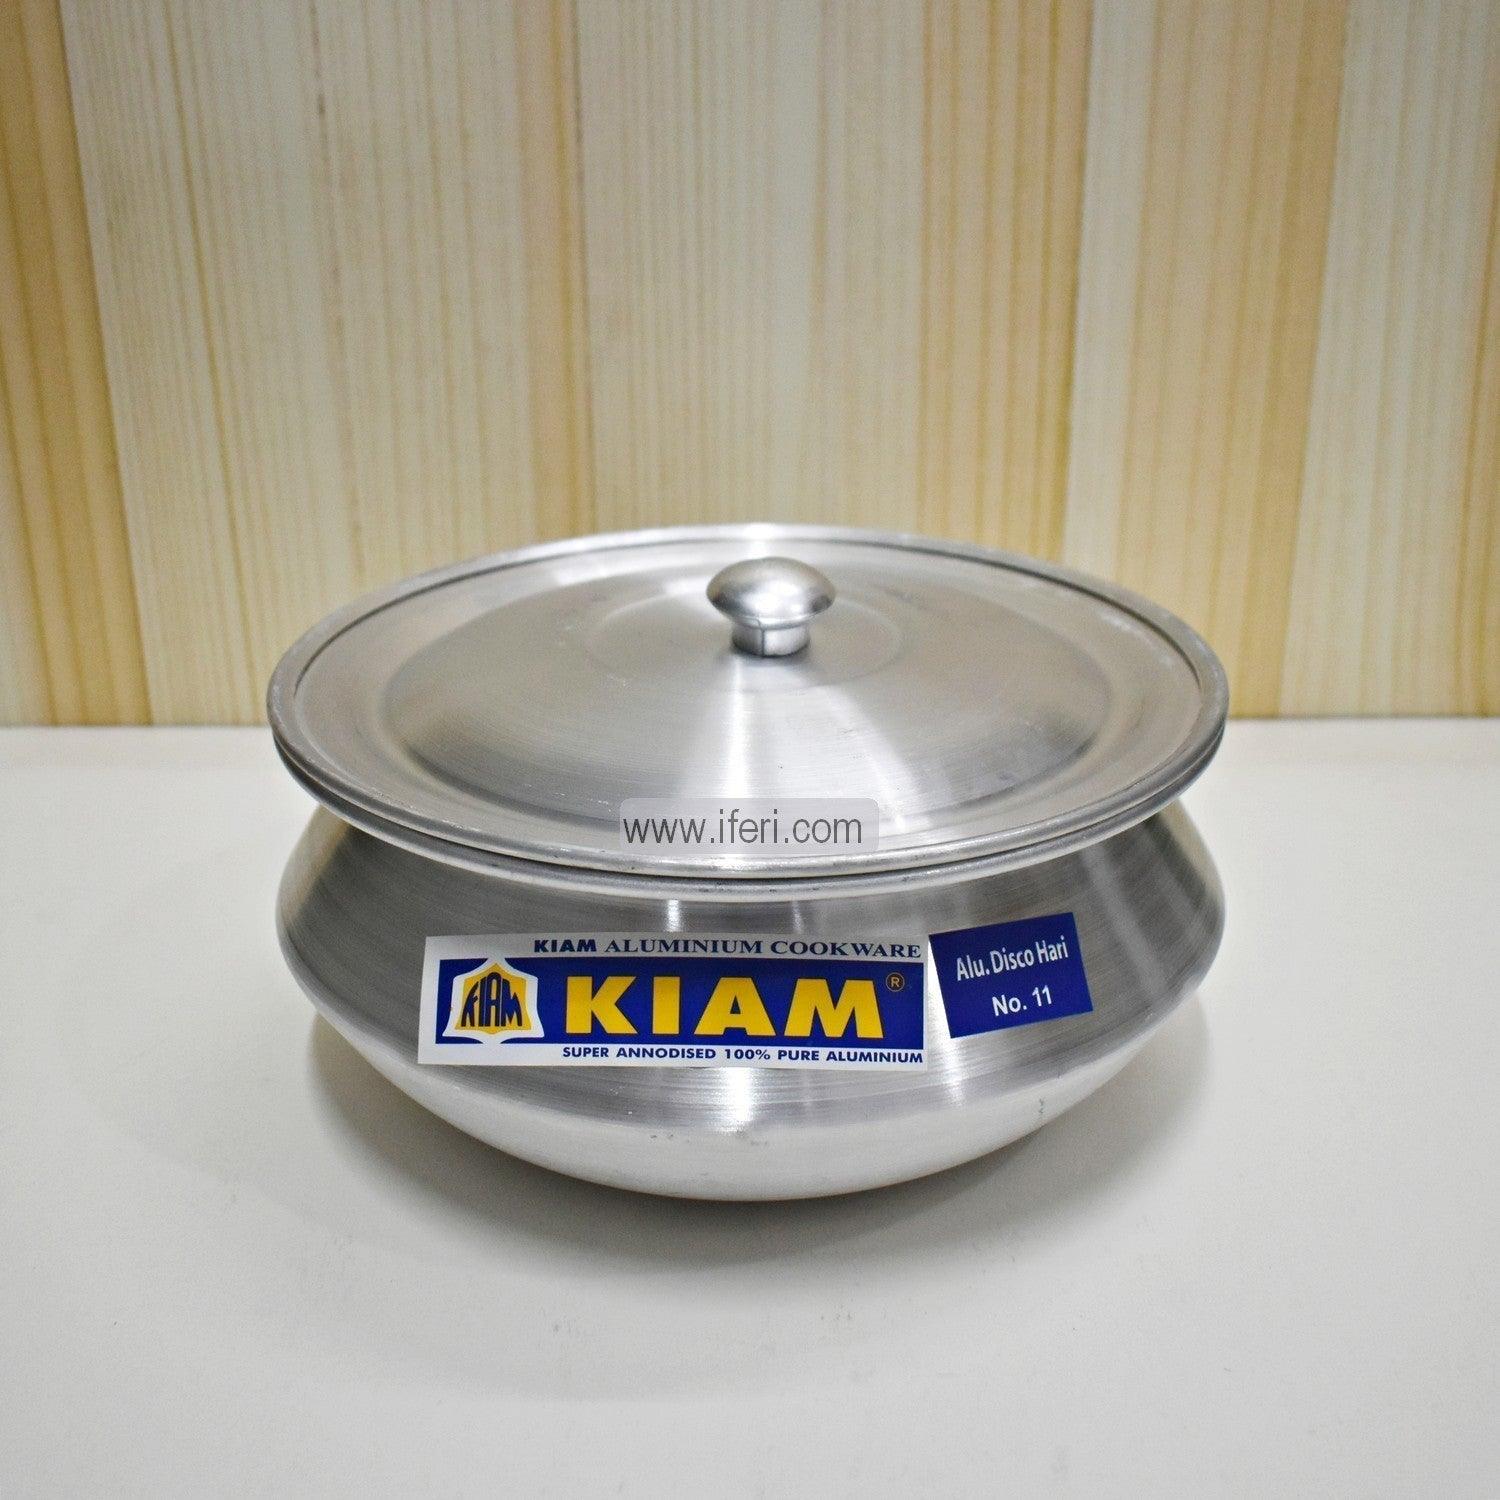 18 cm Kiam Aluminium Hari Cookware With Aluminium Lid BCG02221 Price in Bangladesh - iferi.com